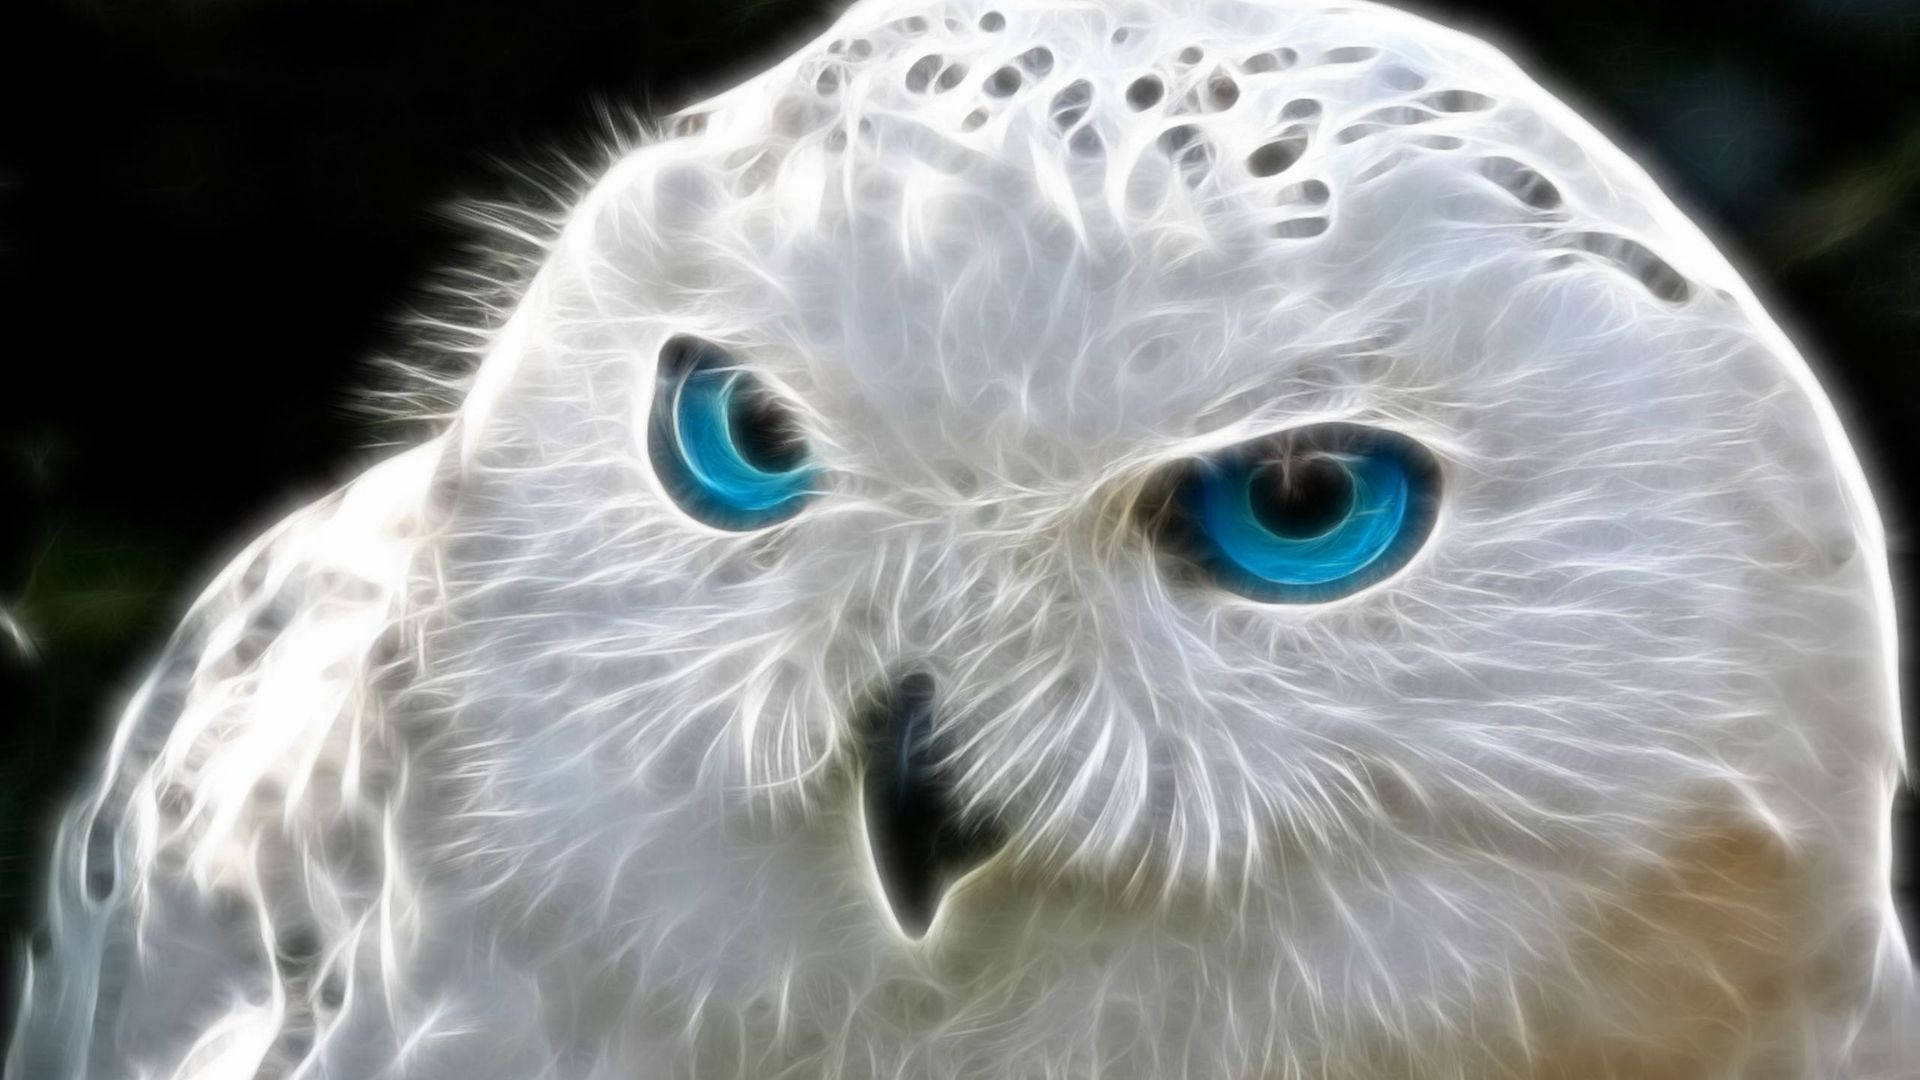 Snow Baby Owl